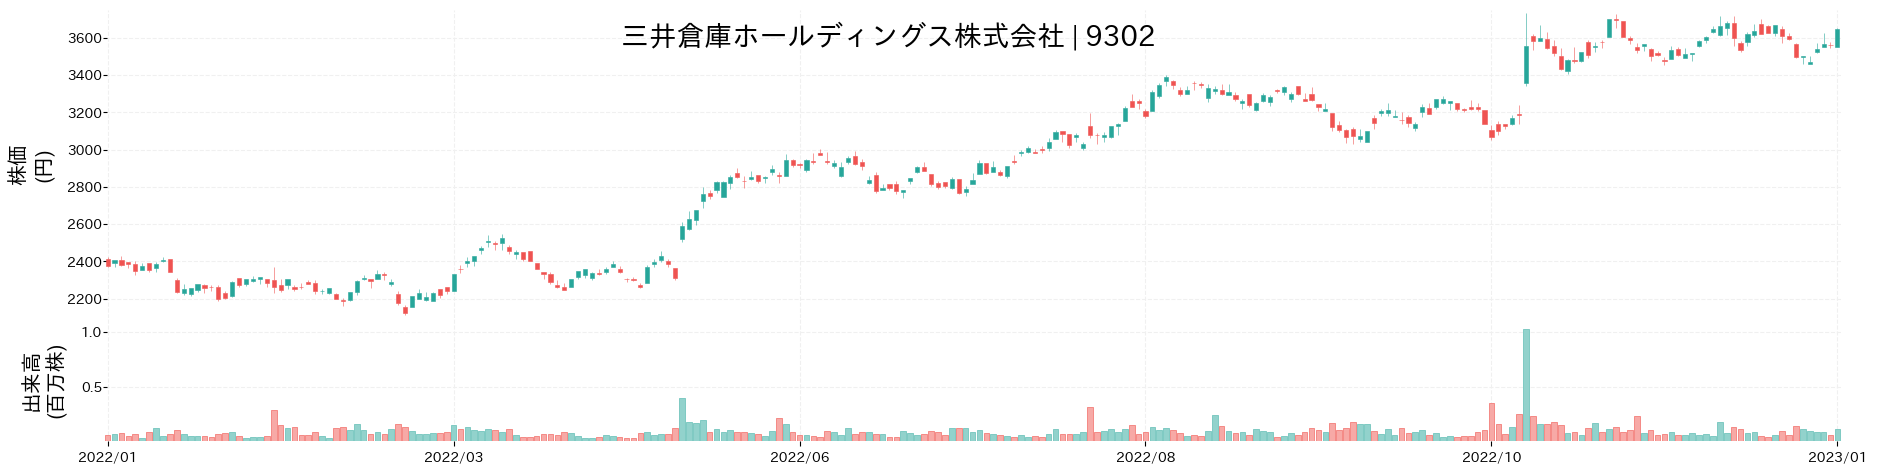 三井倉庫ホールディングスの株価推移(2022)